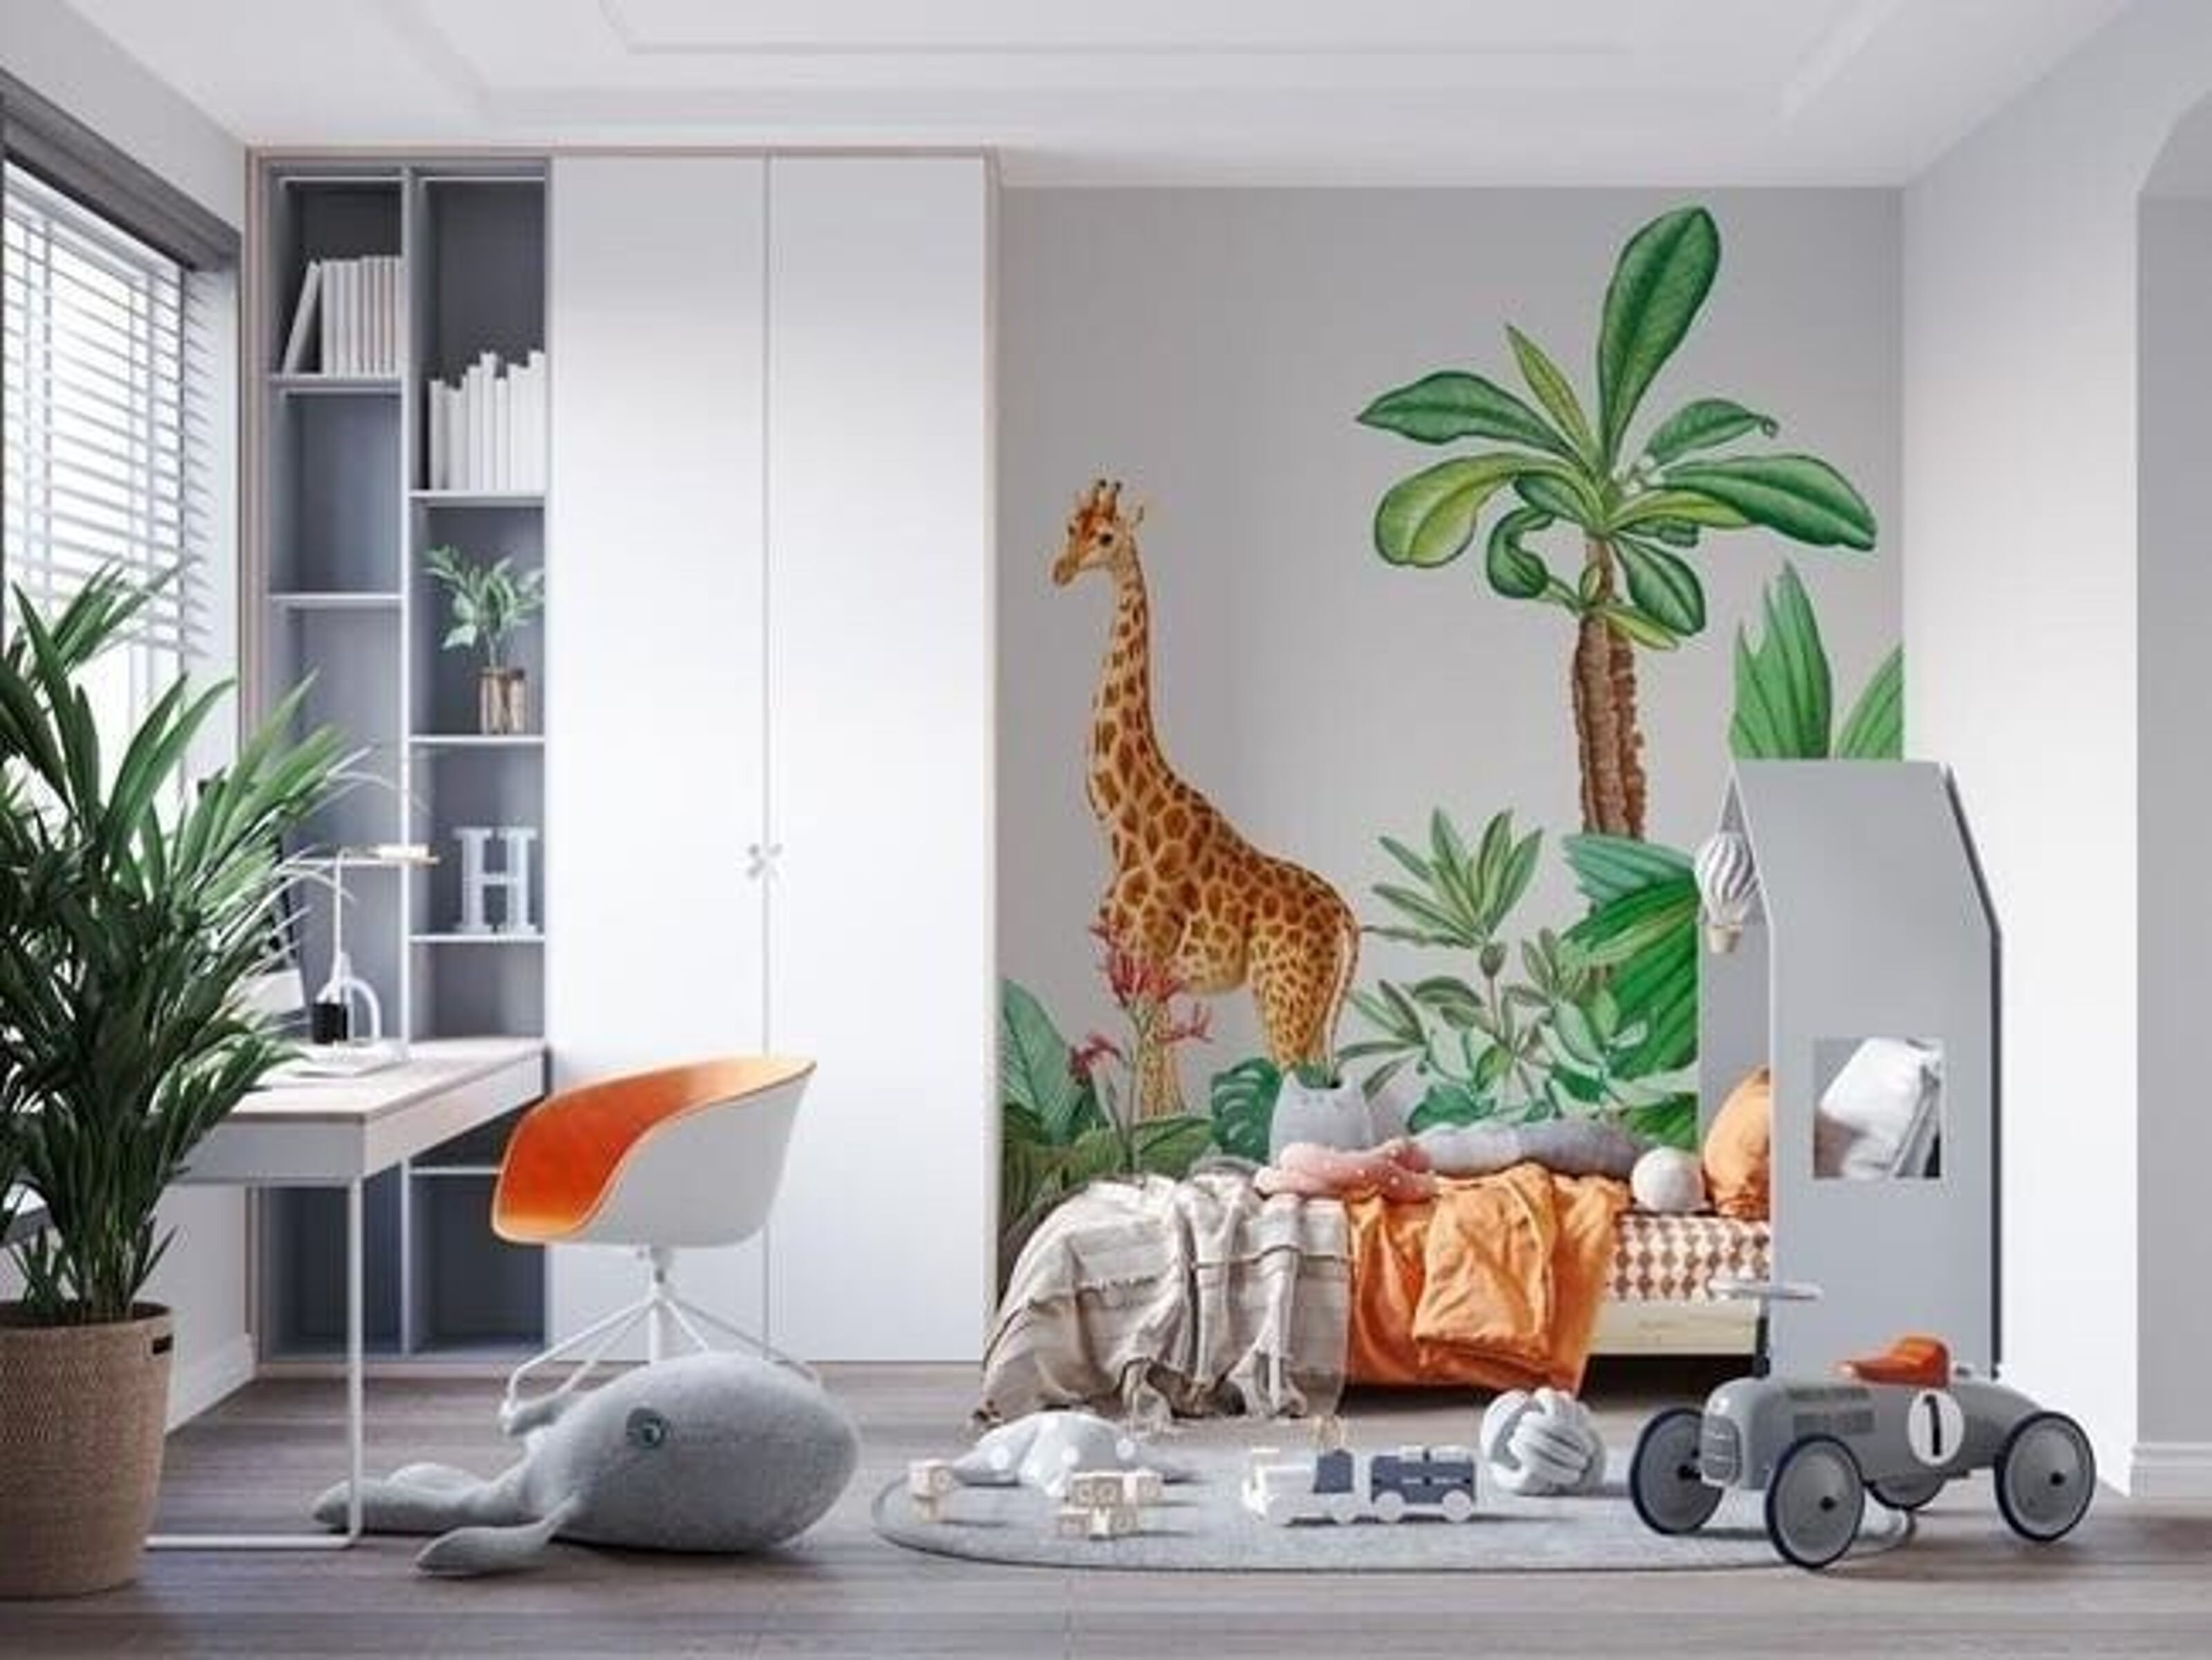 Papier peint panoramique tendance enfant jungle girafe